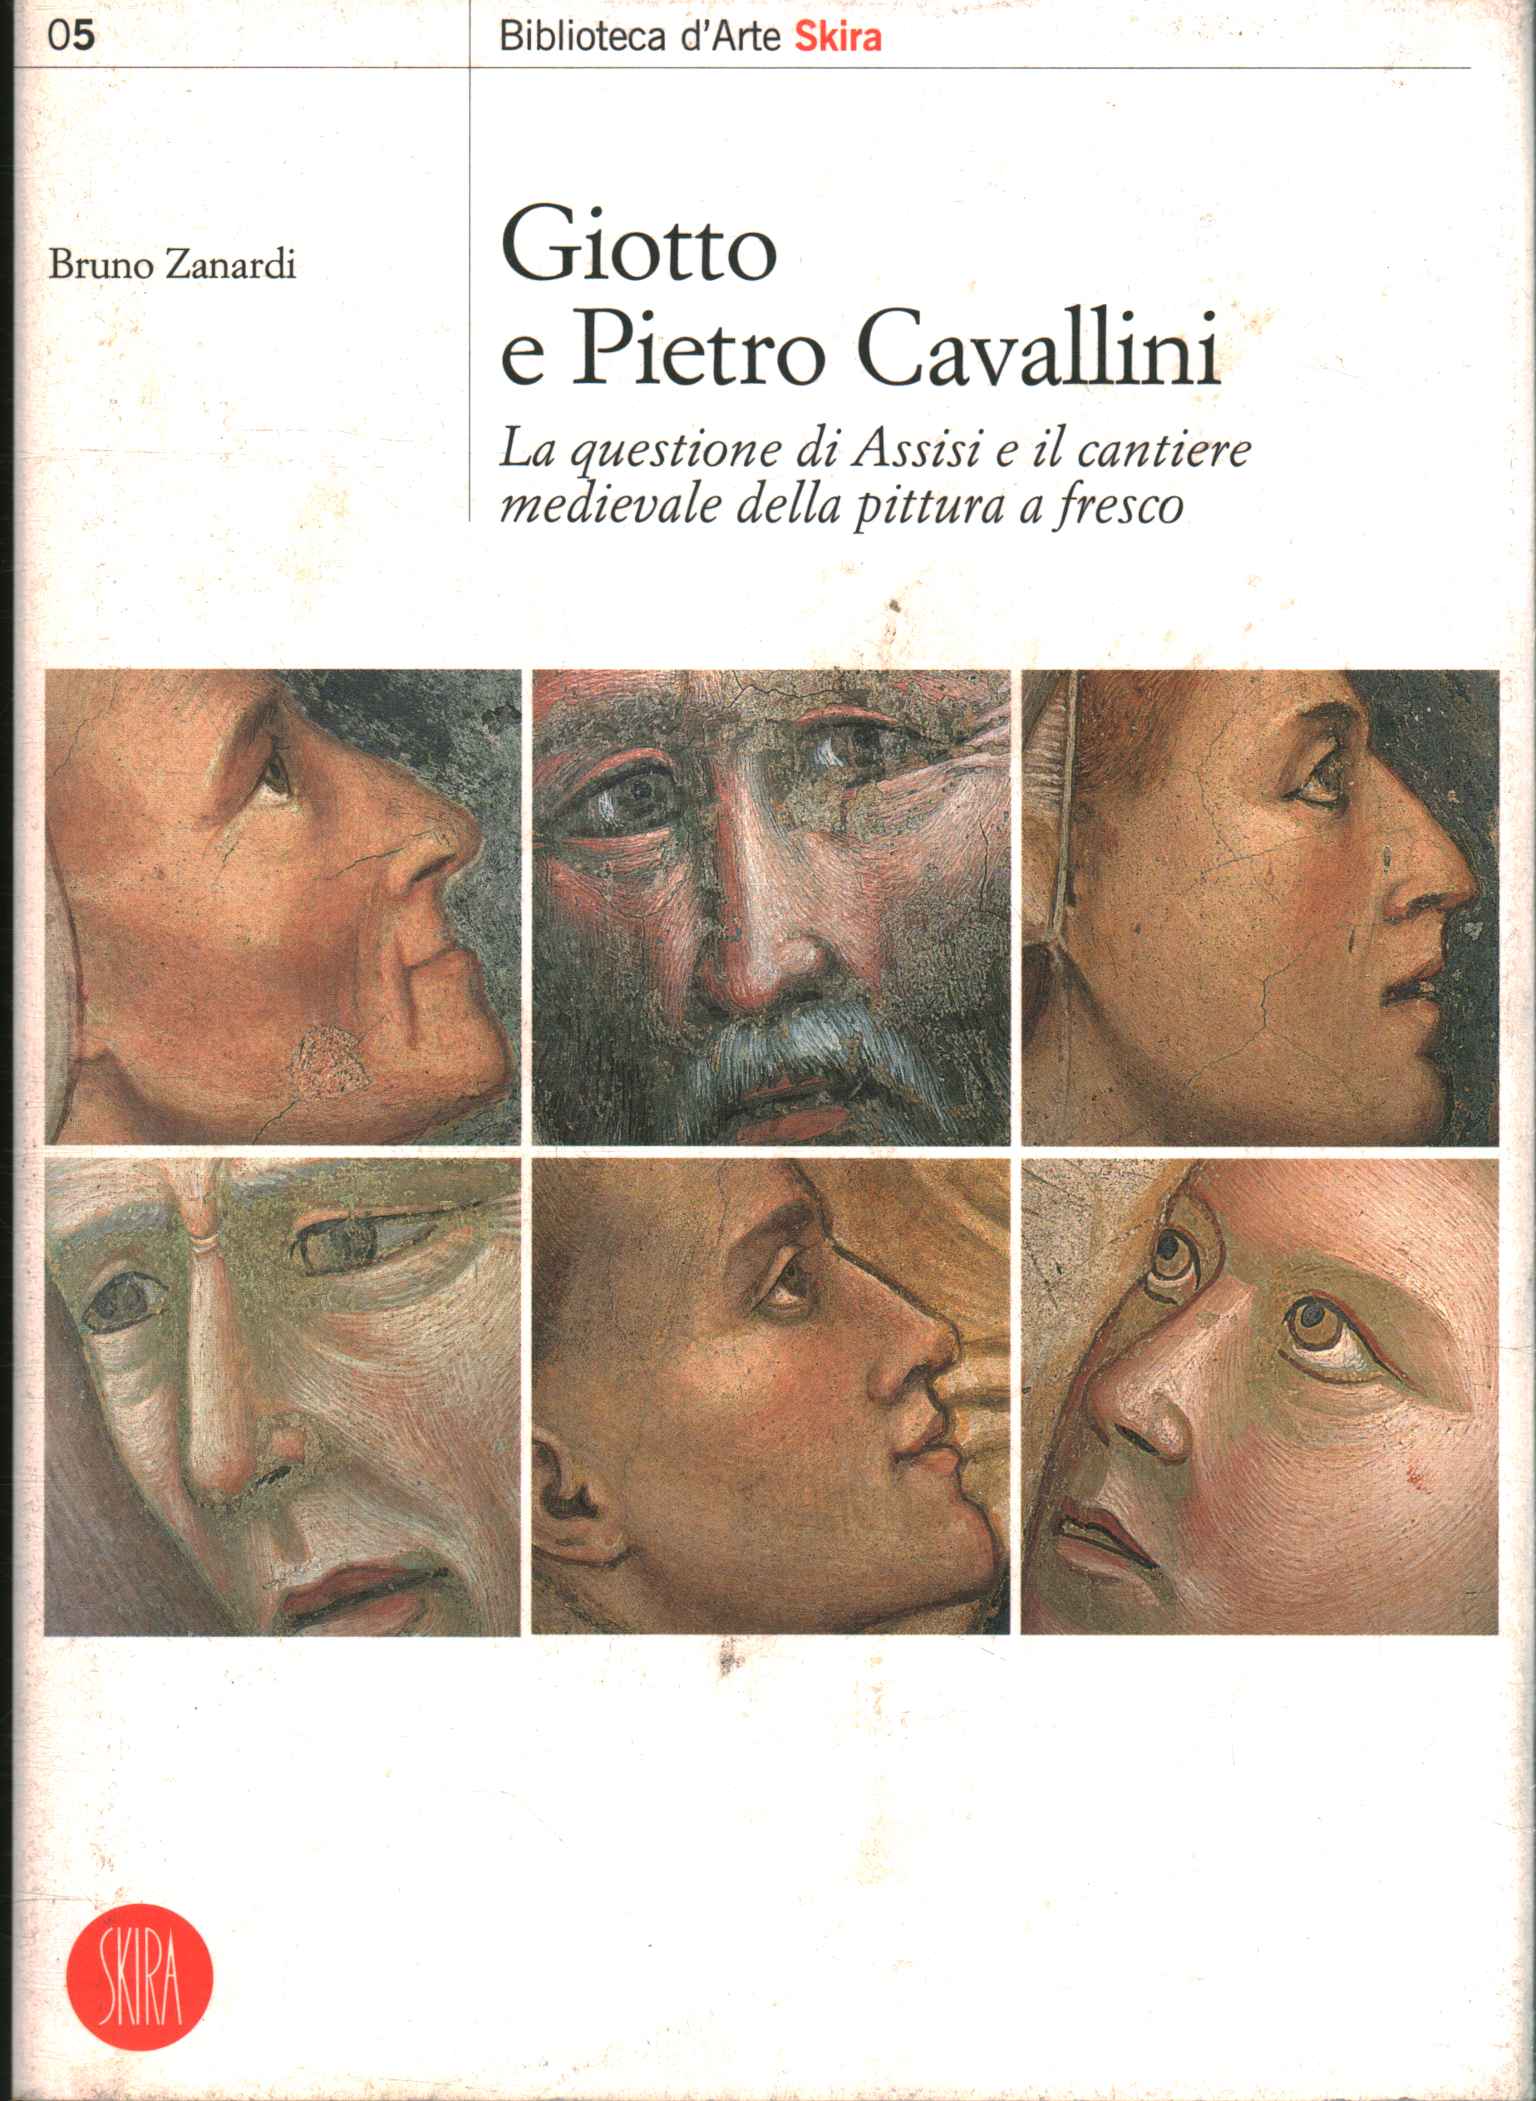 Giotto and Pietro Cavallini